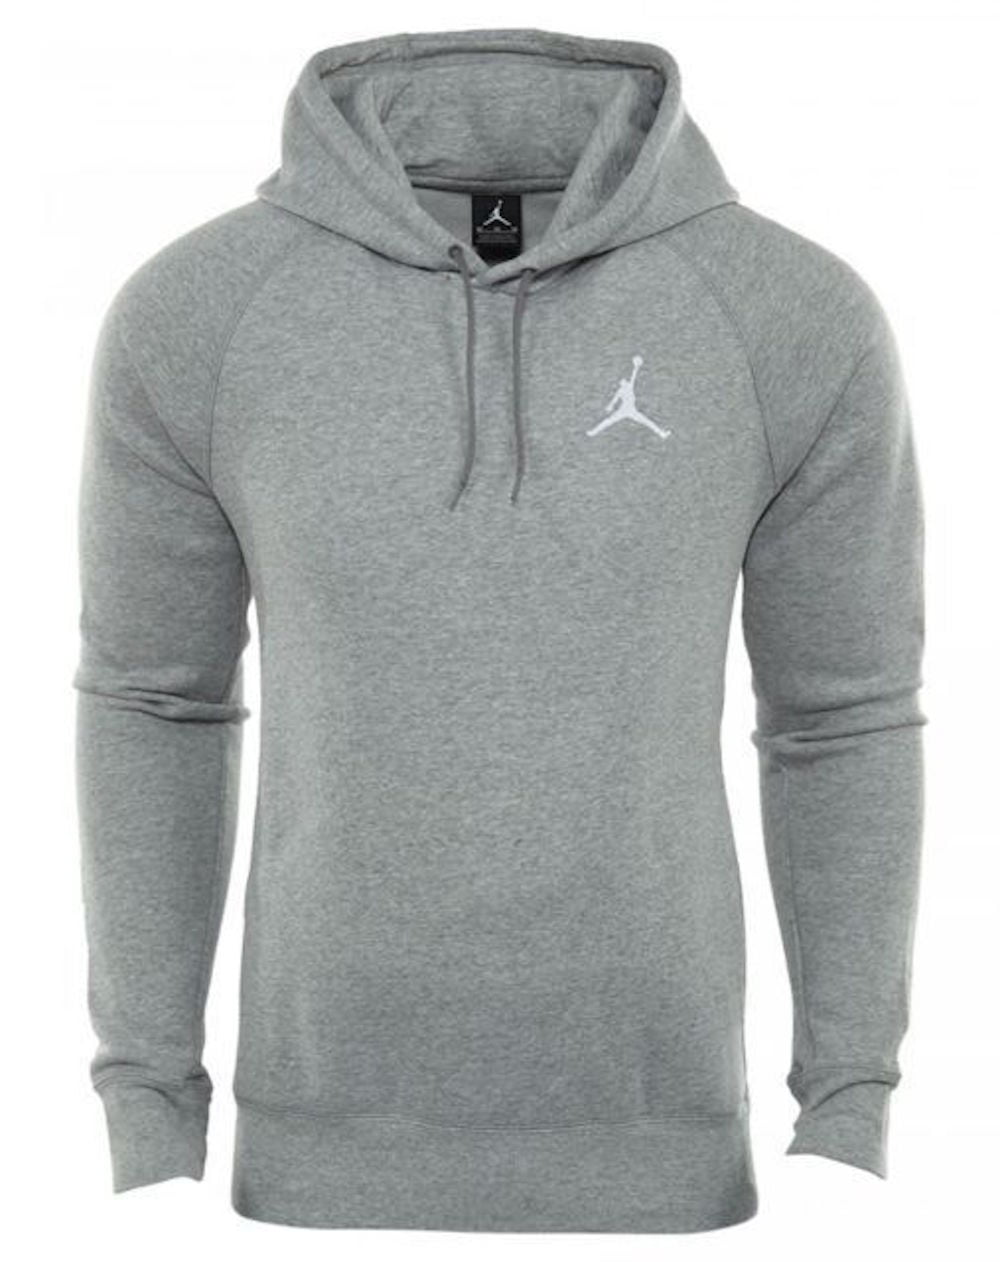 Nike Mens Jordan Flight Pull Over Hooded Sweatshirt Light Grey/White